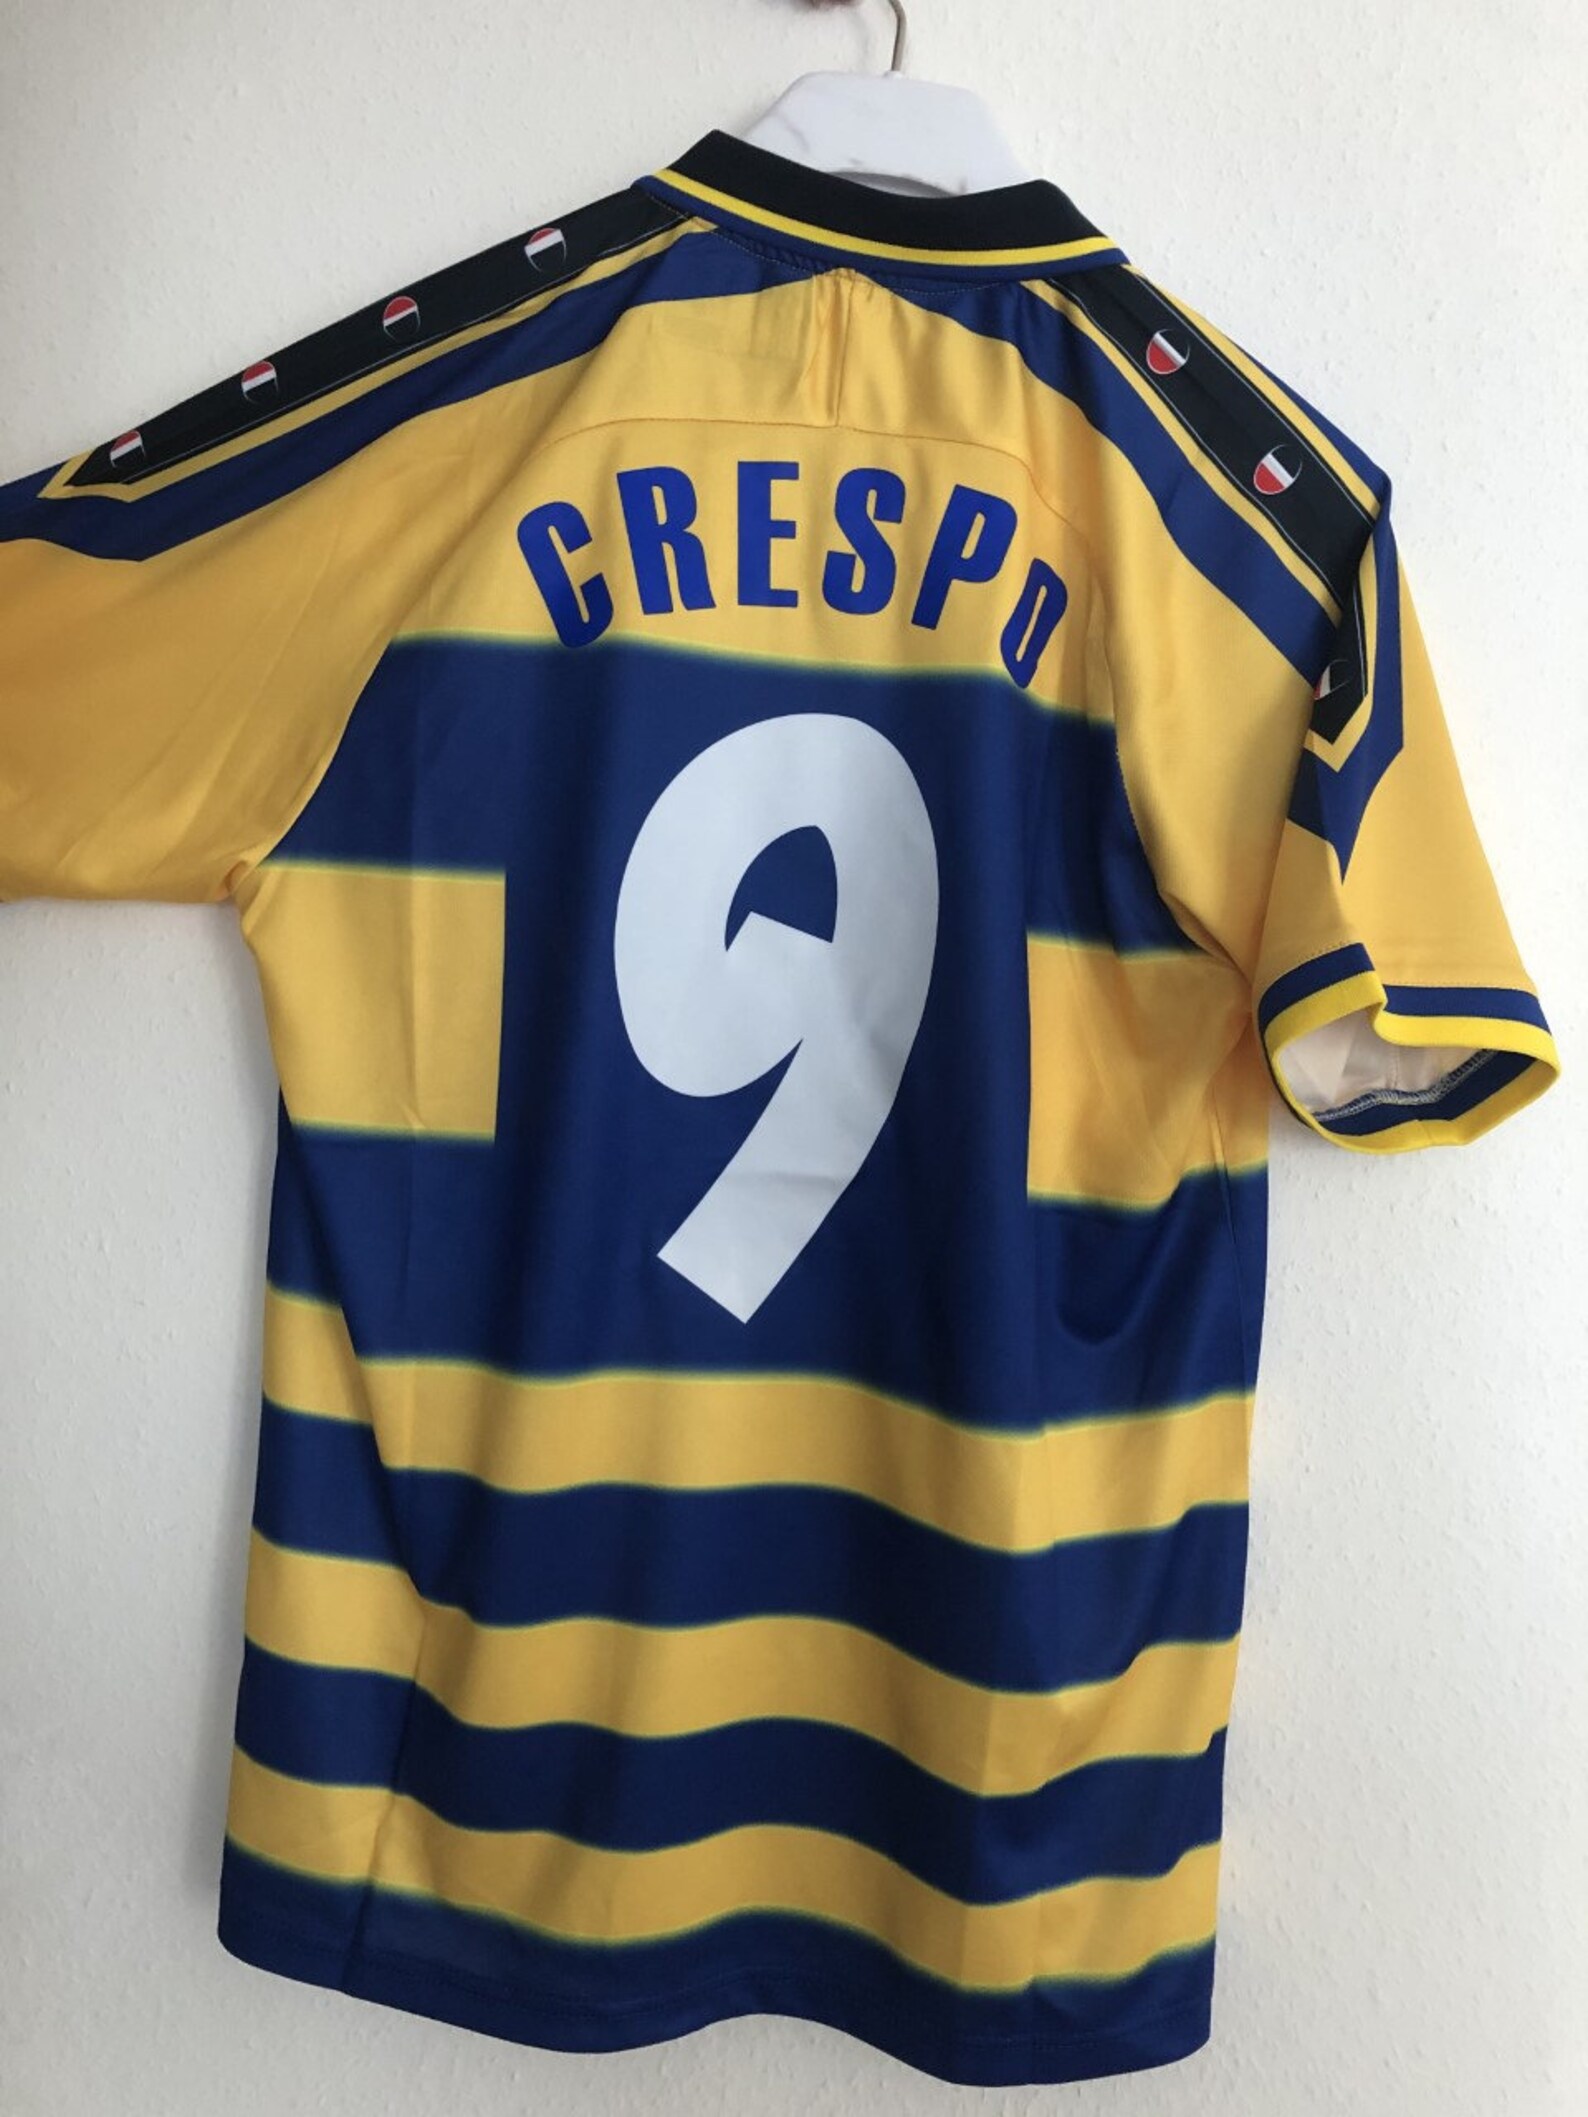 Crespo 9 Parma Retro Football shirt | Etsy